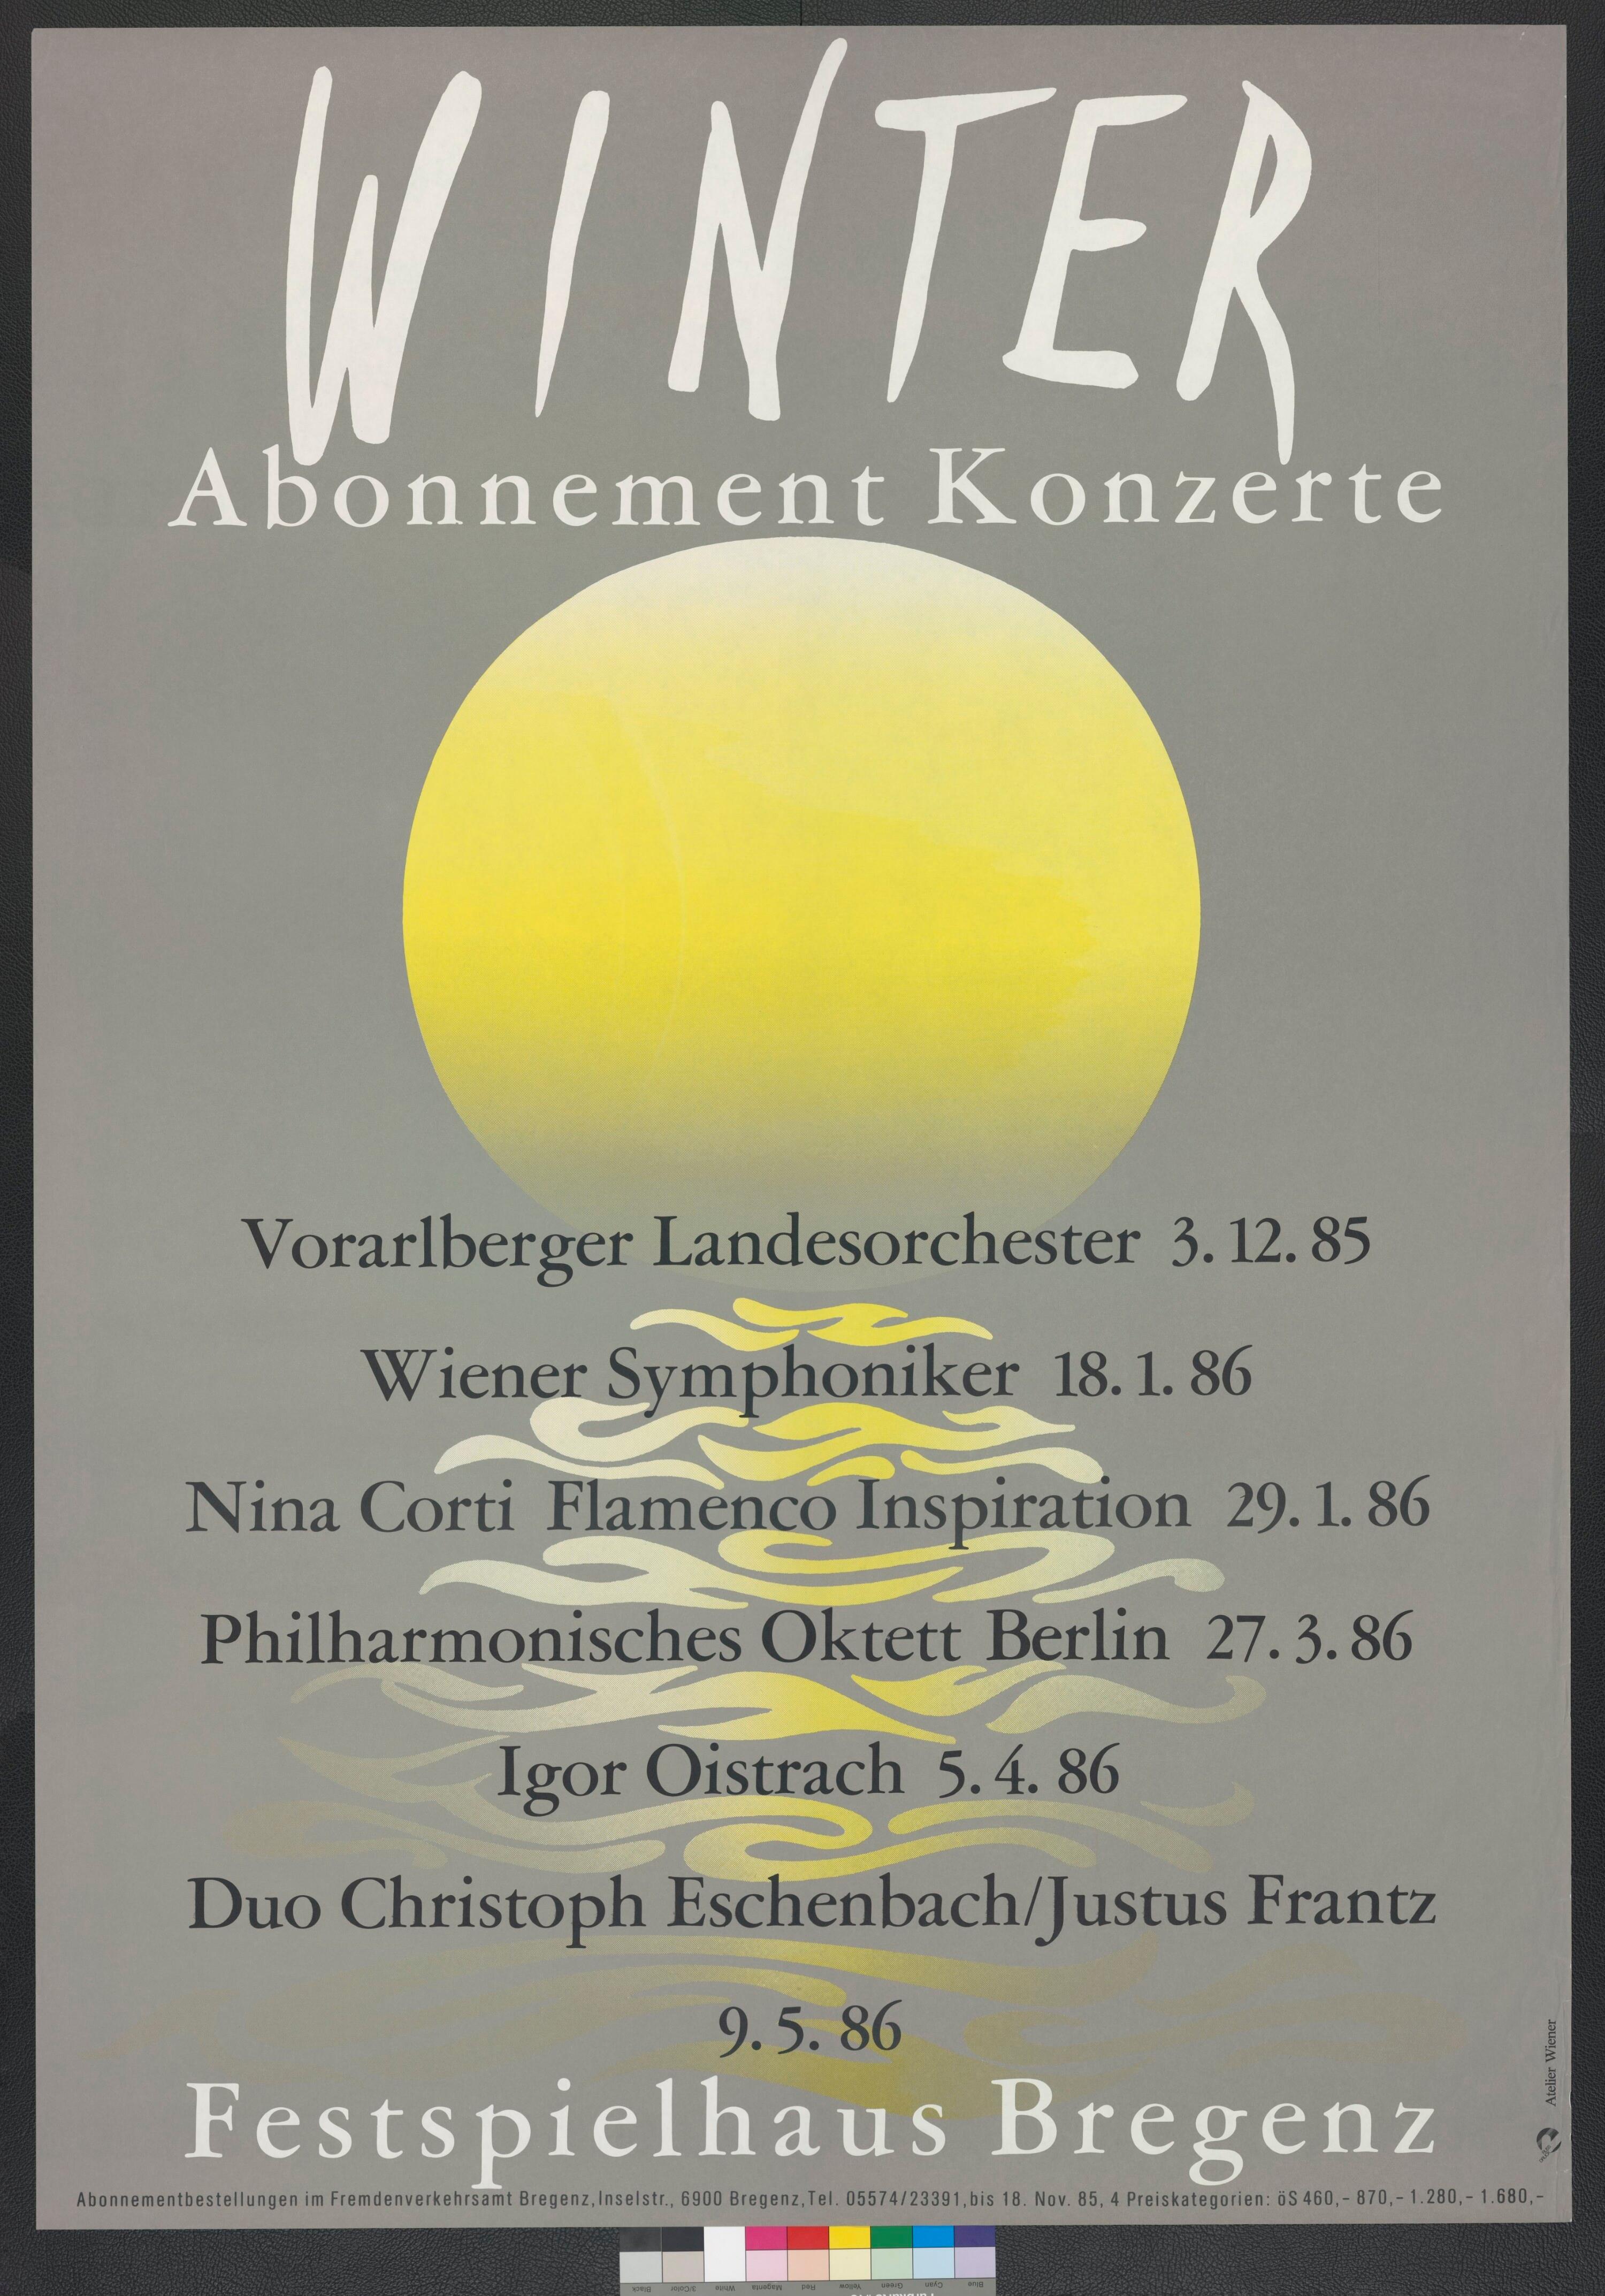 Plakat für Abonnementkonzerte im Festspielhaus Bregenz></div>


    <hr>
    <div class=